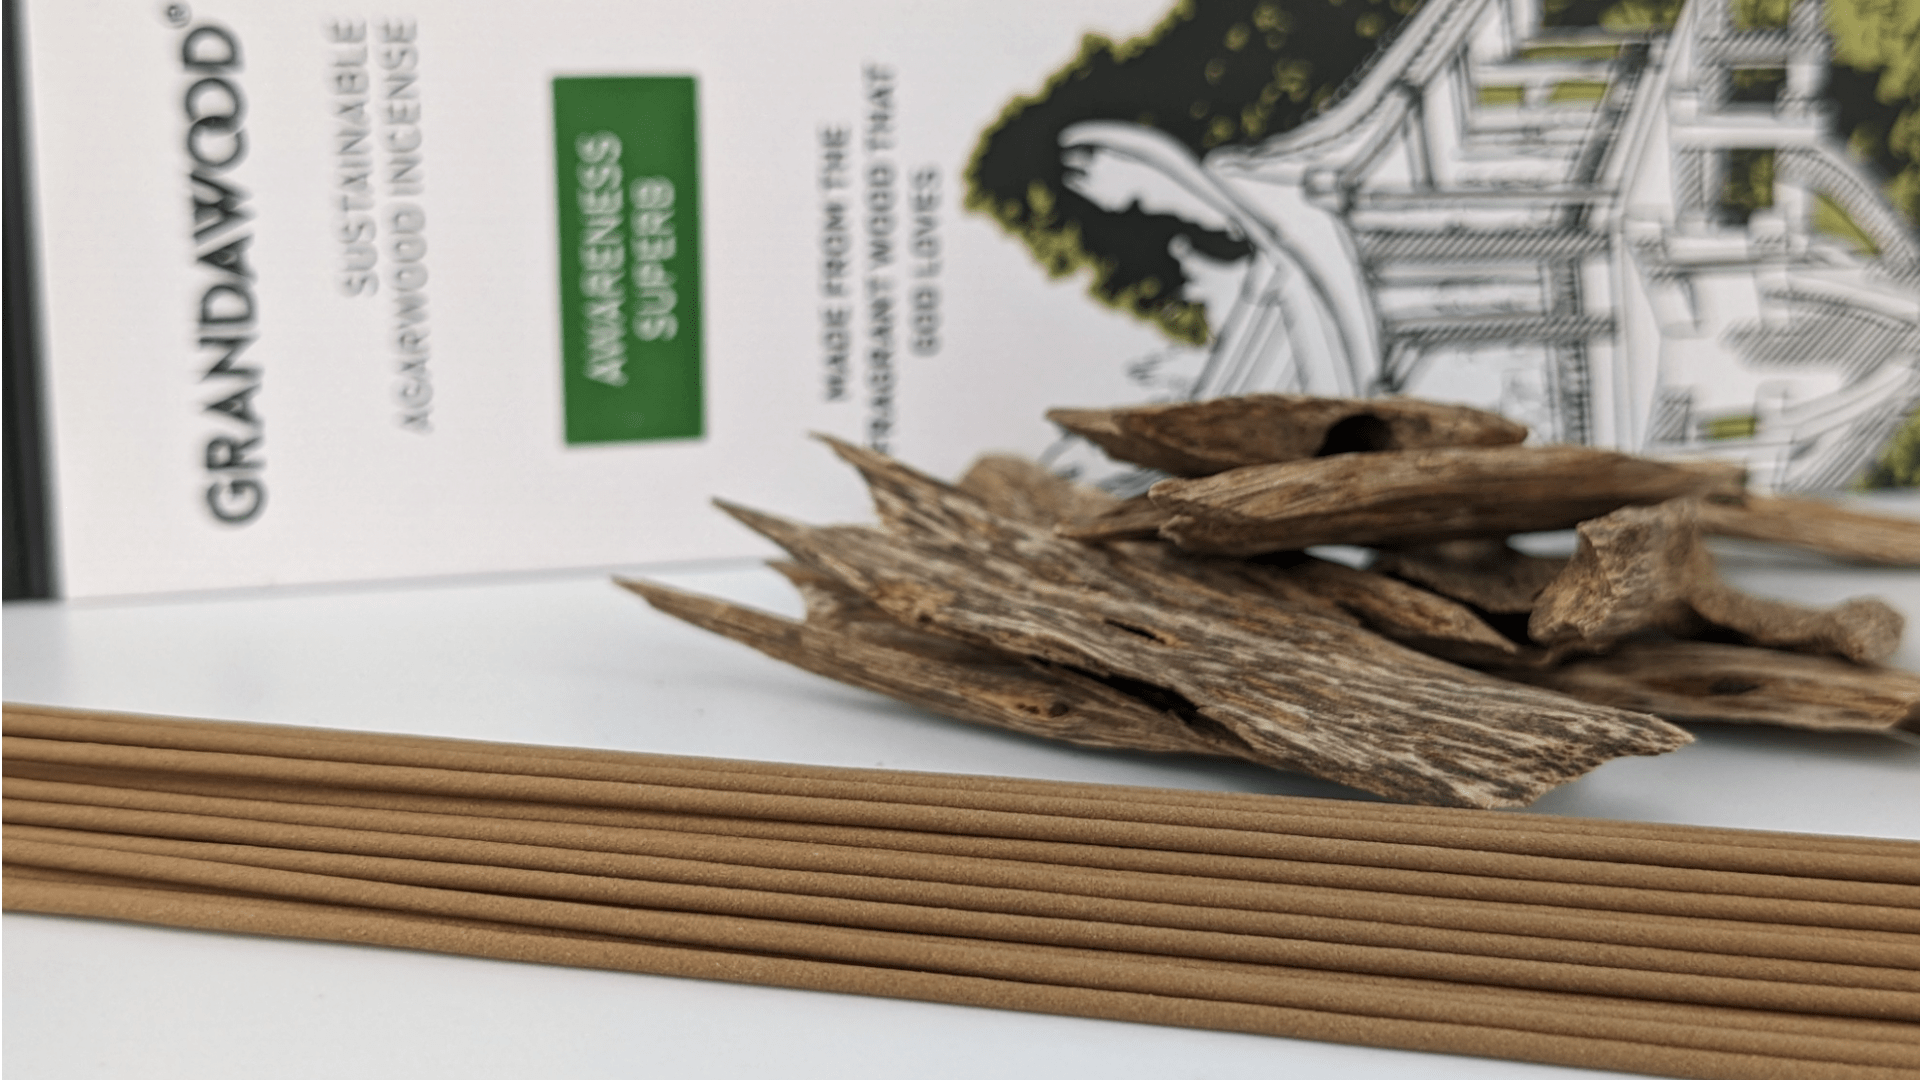 Awareness - Grandawood Cultivated Agarwood Incense 沉香香 -